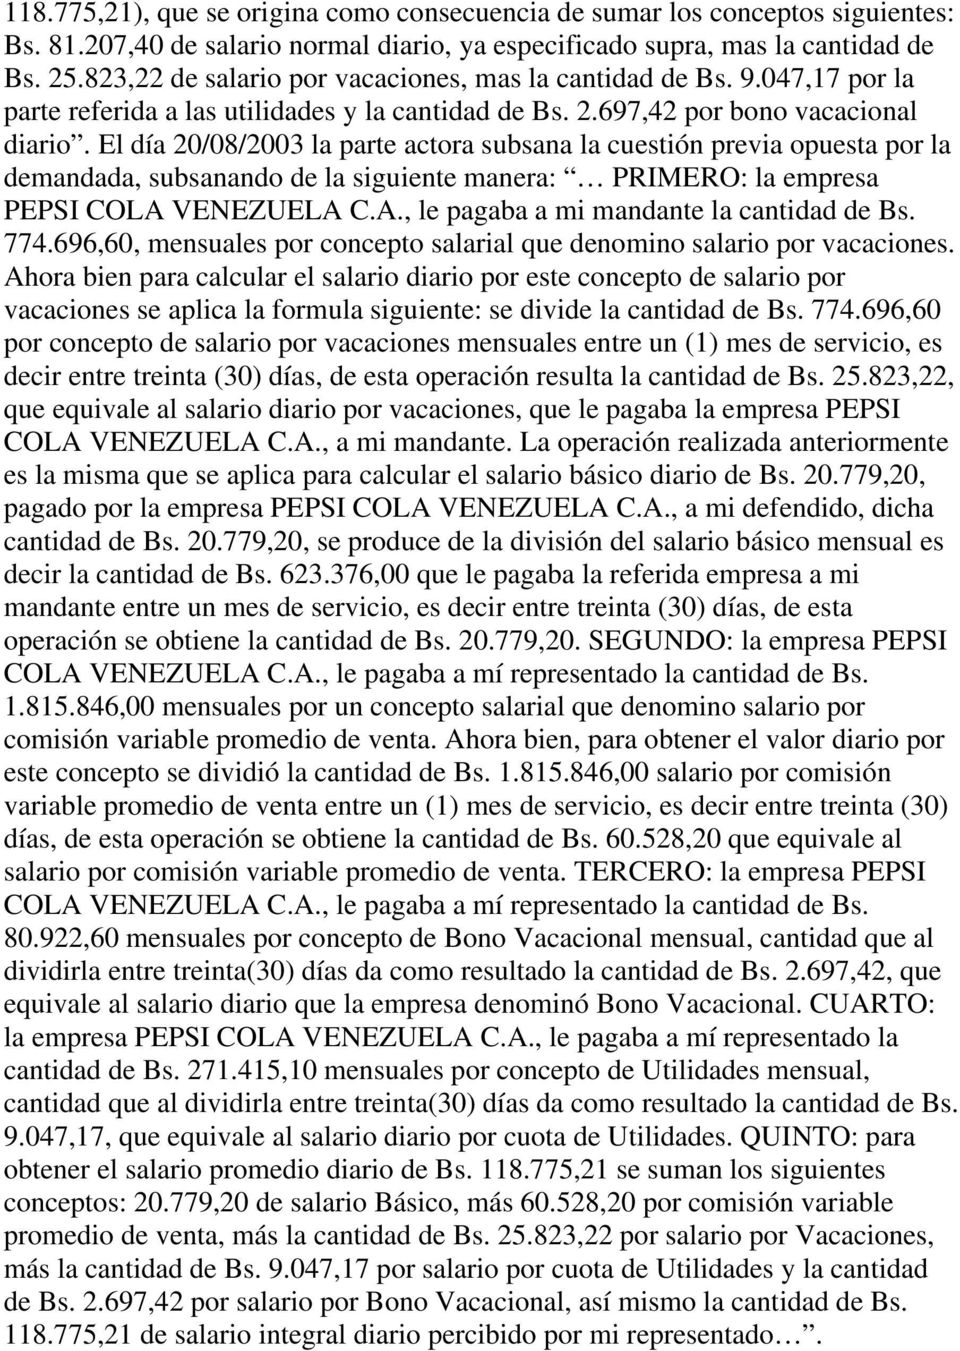 El día 20/08/2003 la parte actora subsana la cuestión previa opuesta por la demandada, subsanando de la siguiente manera: PRIMERO: la empresa PEPSI COLA VENEZUELA C.A., le pagaba a mi mandante la cantidad de Bs.